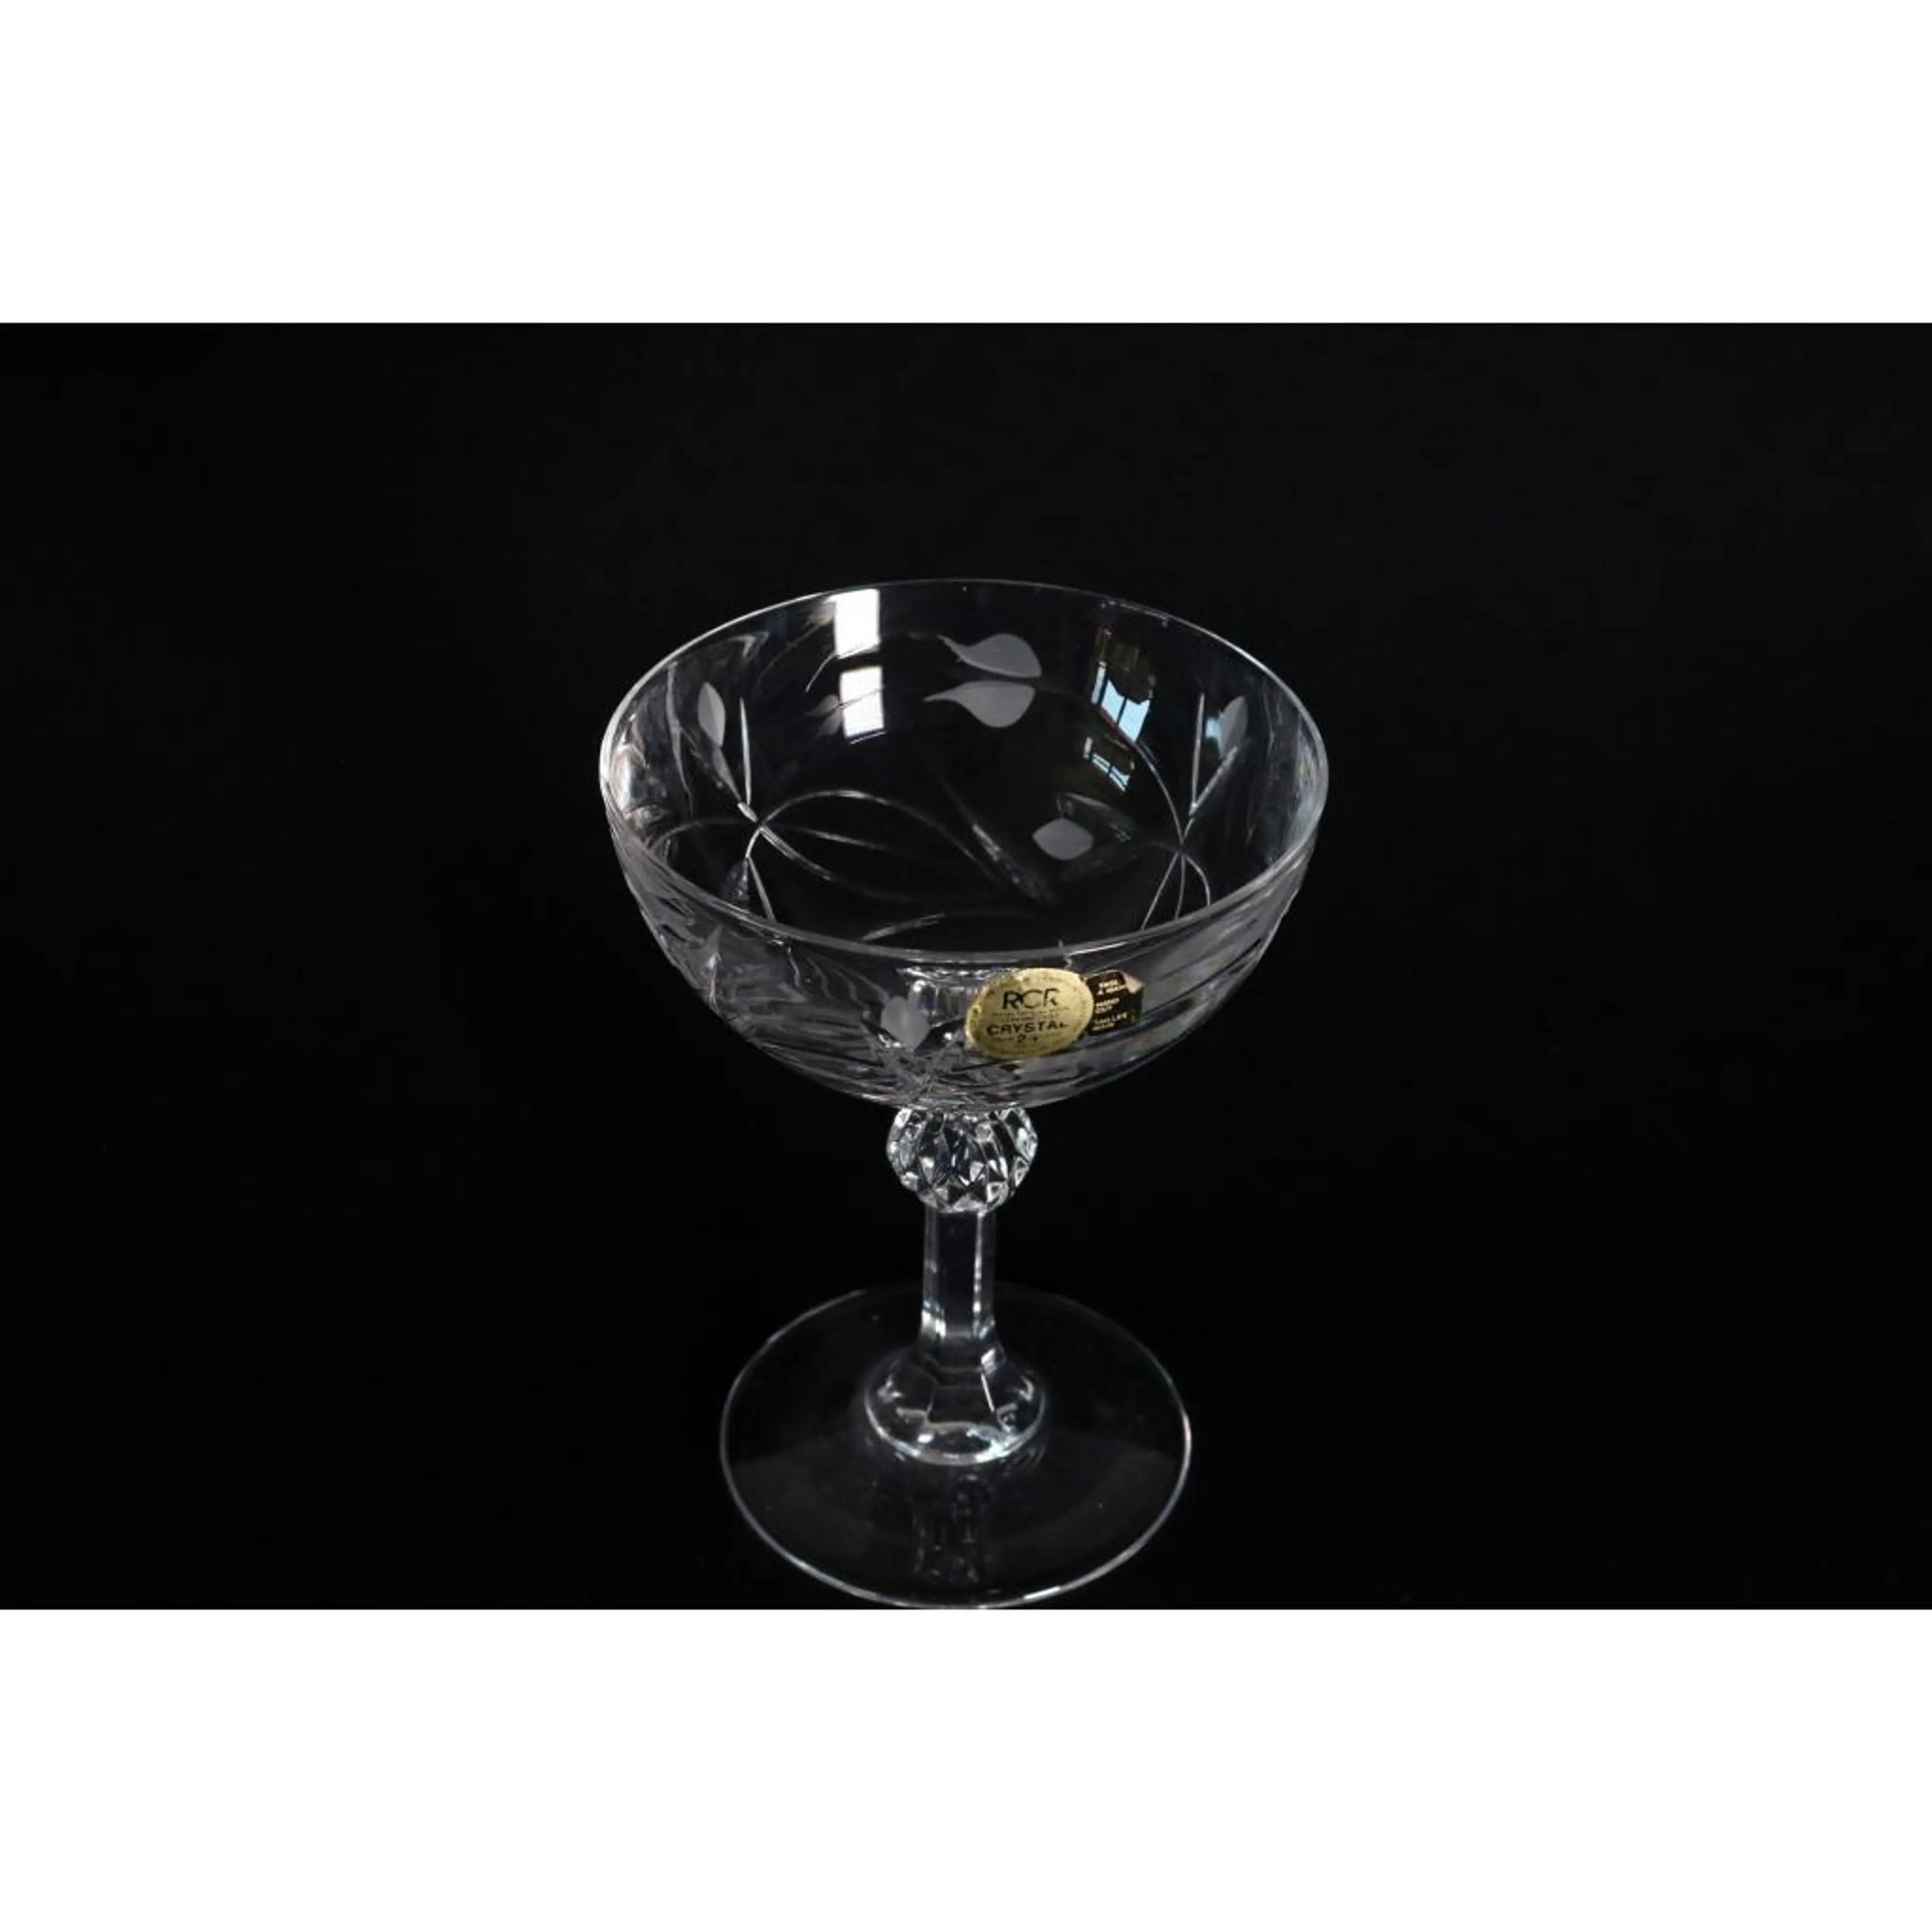 Martini Glass